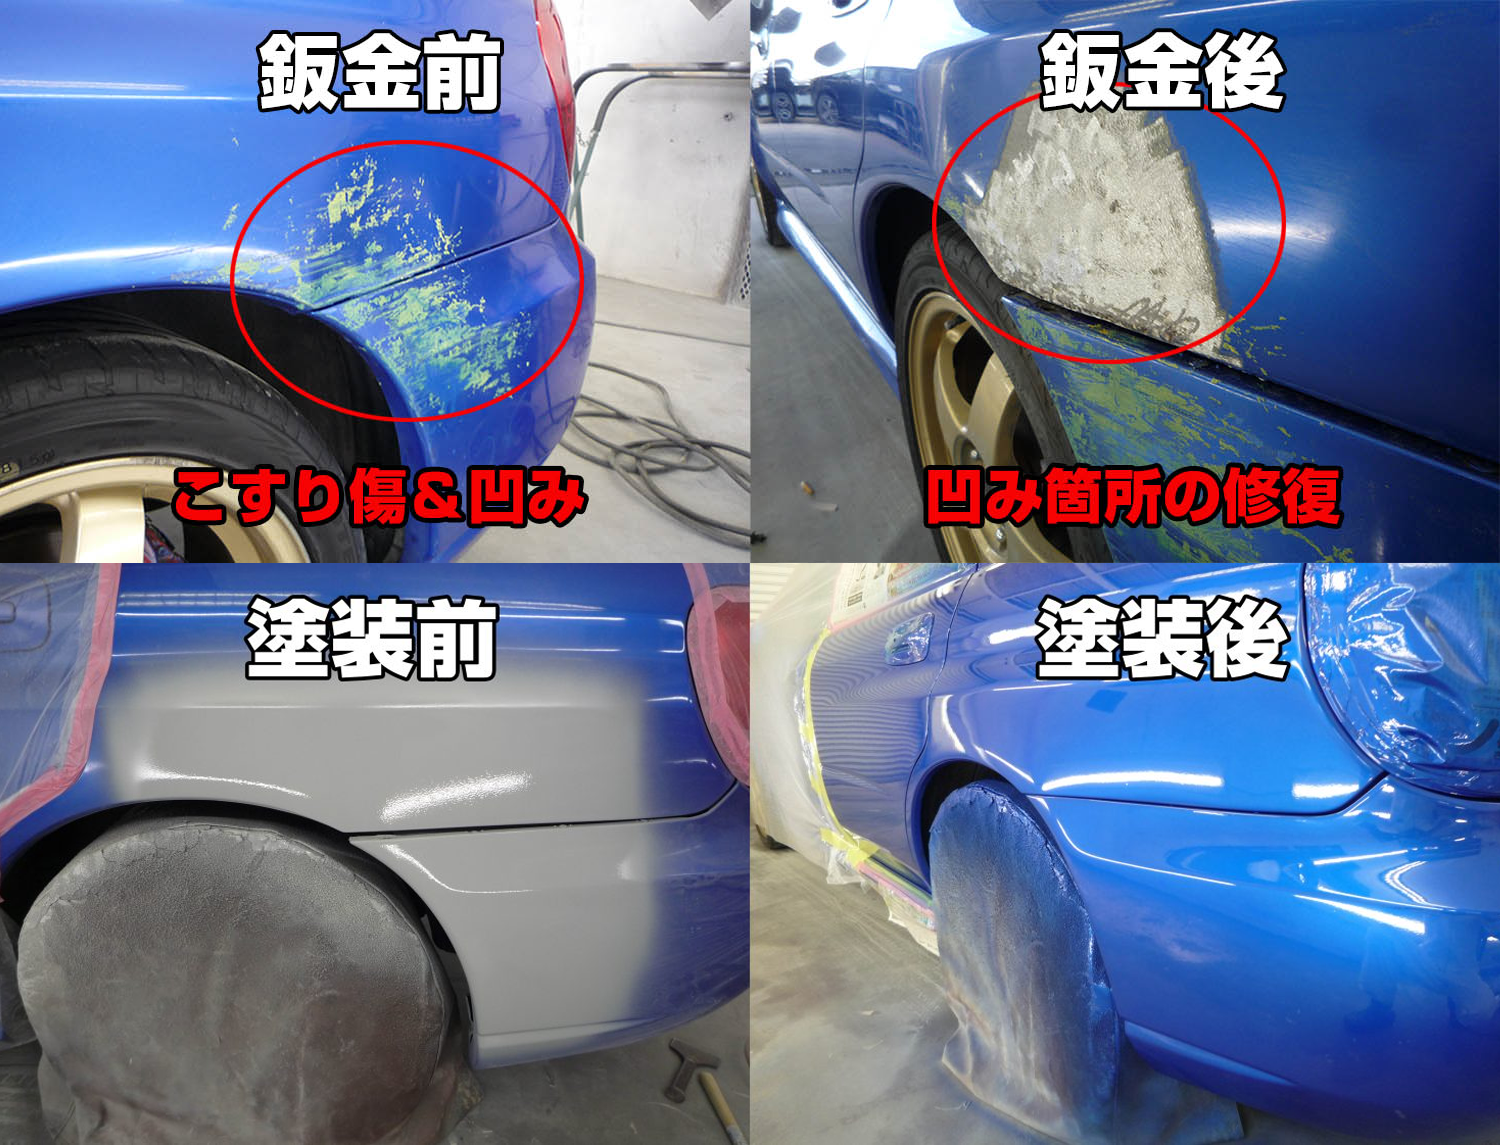 こんなにやることあるの 鈑金塗装工程の裏側紹介 愛知県豊田市の車修理 板金塗装 全損修理工場のビックハート